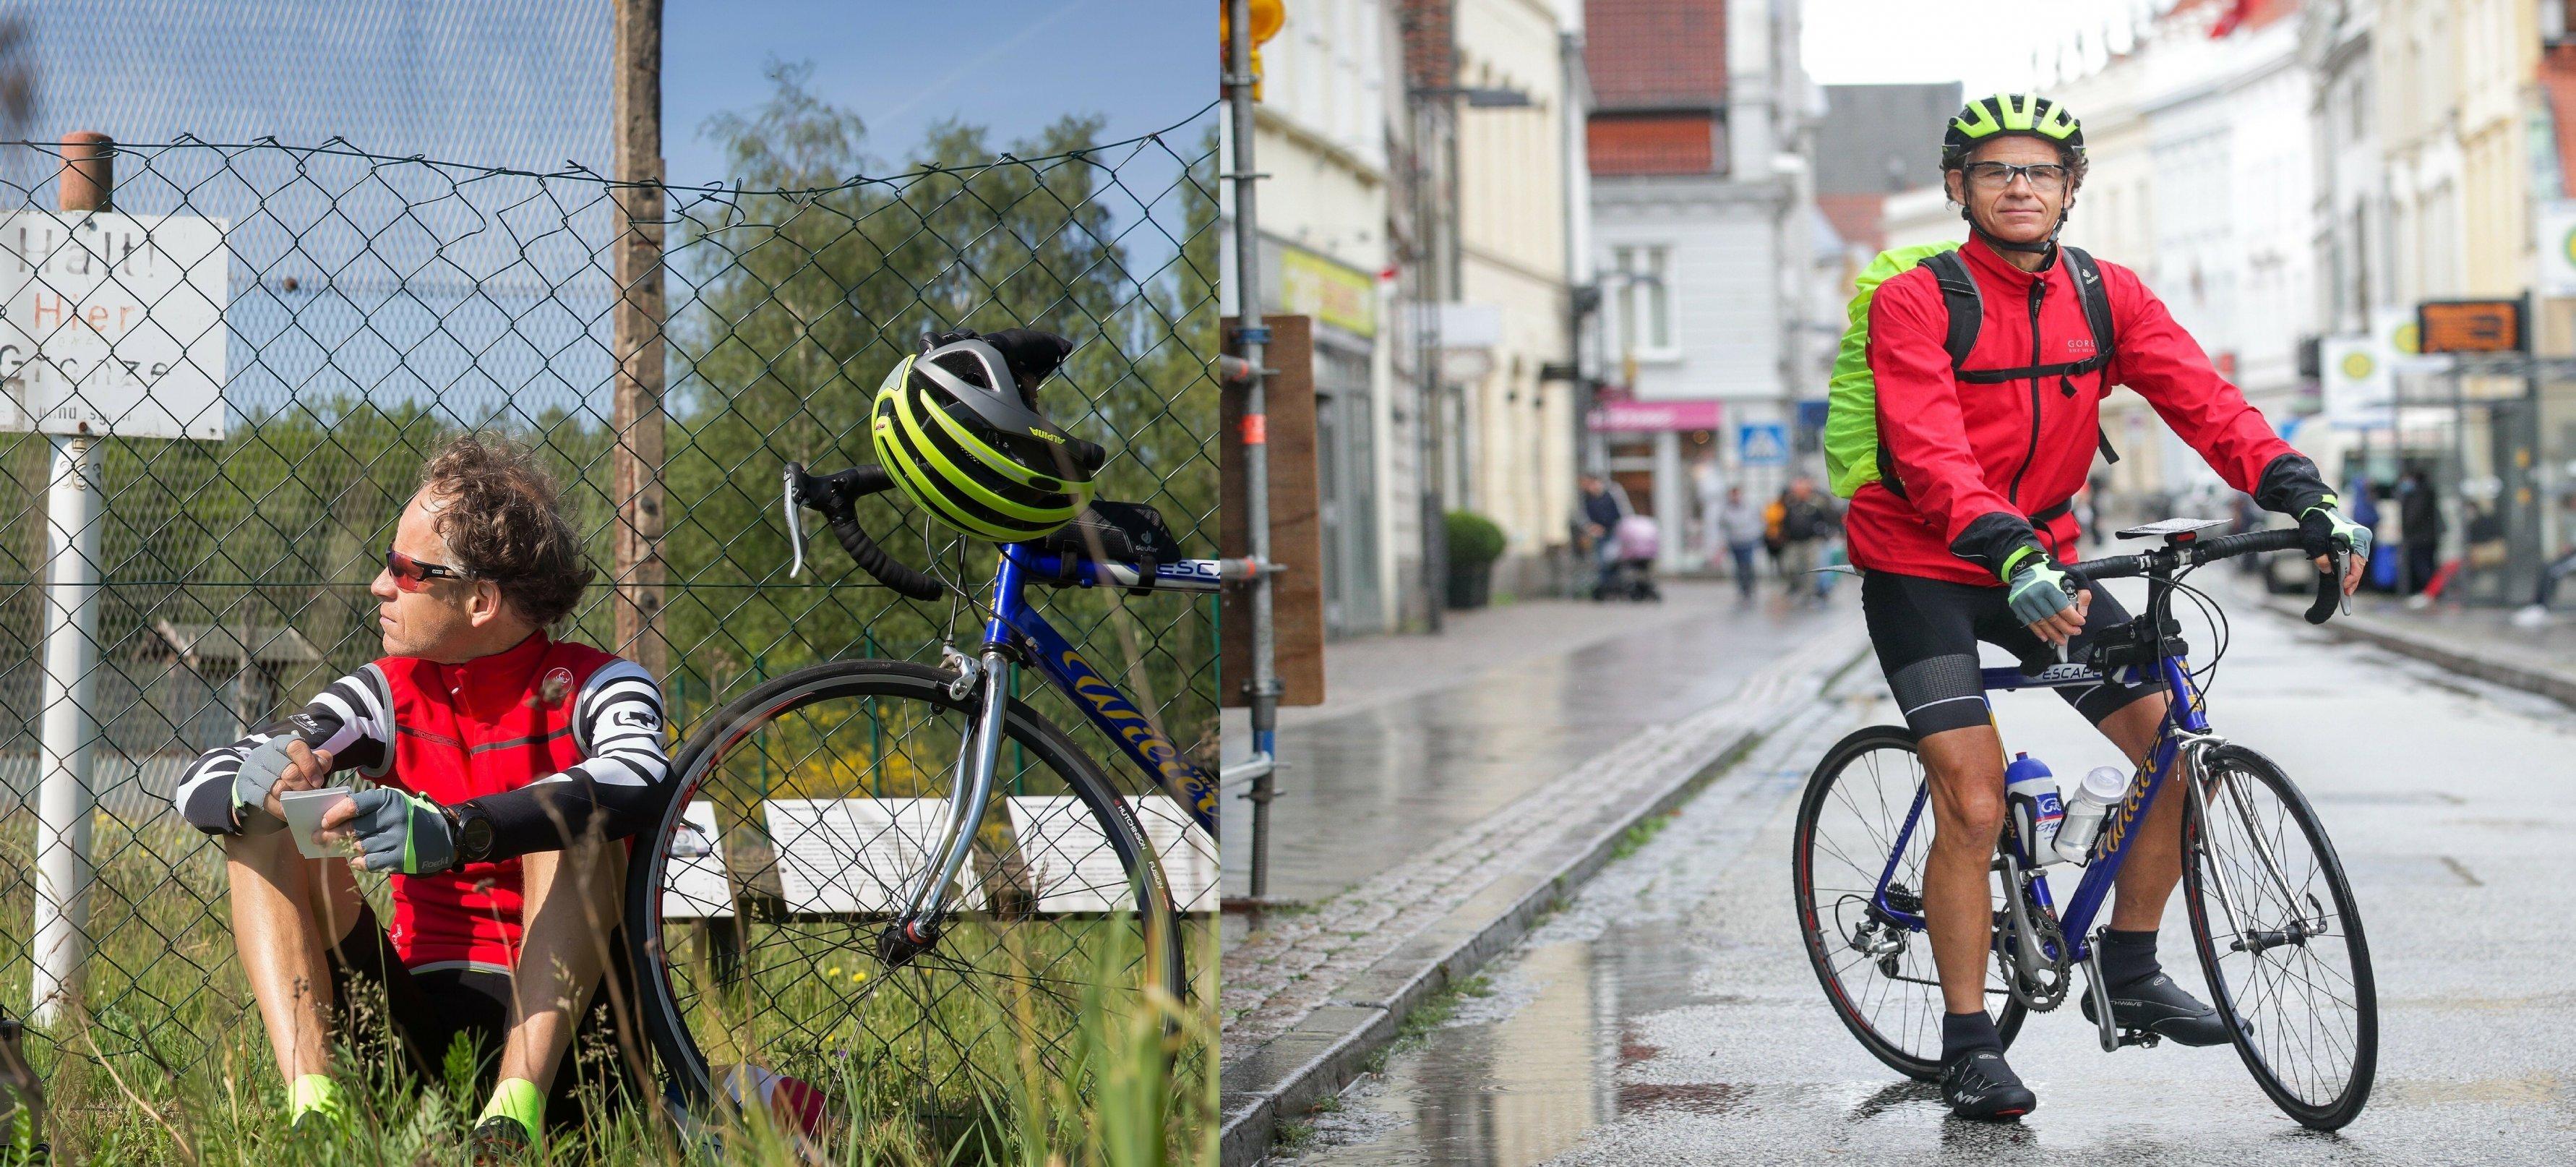 Der RadelndeReporter sitzt im linken Bildteil im Gras vor einem alten Grenzzaun; rechts posiert er mit seinem Rennrad im Regen in der Lübecker Königsstraße.